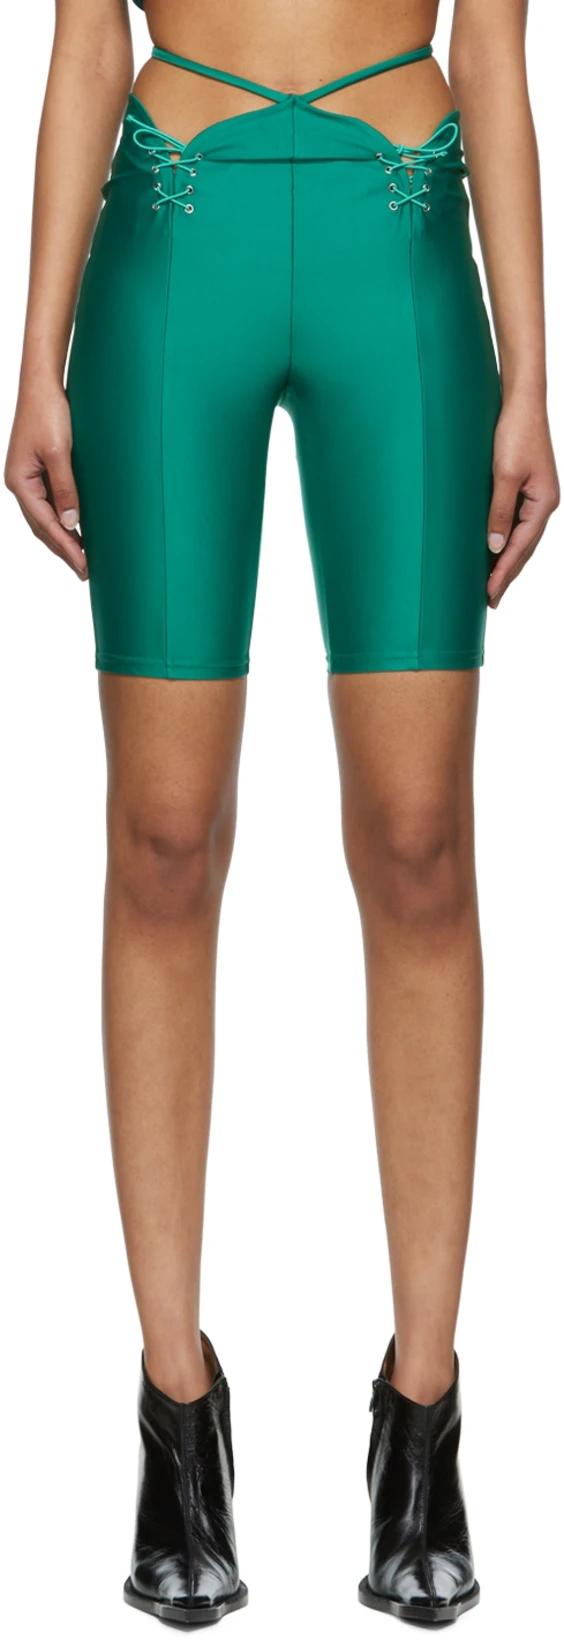 Green Nylon Shorts by DIDU